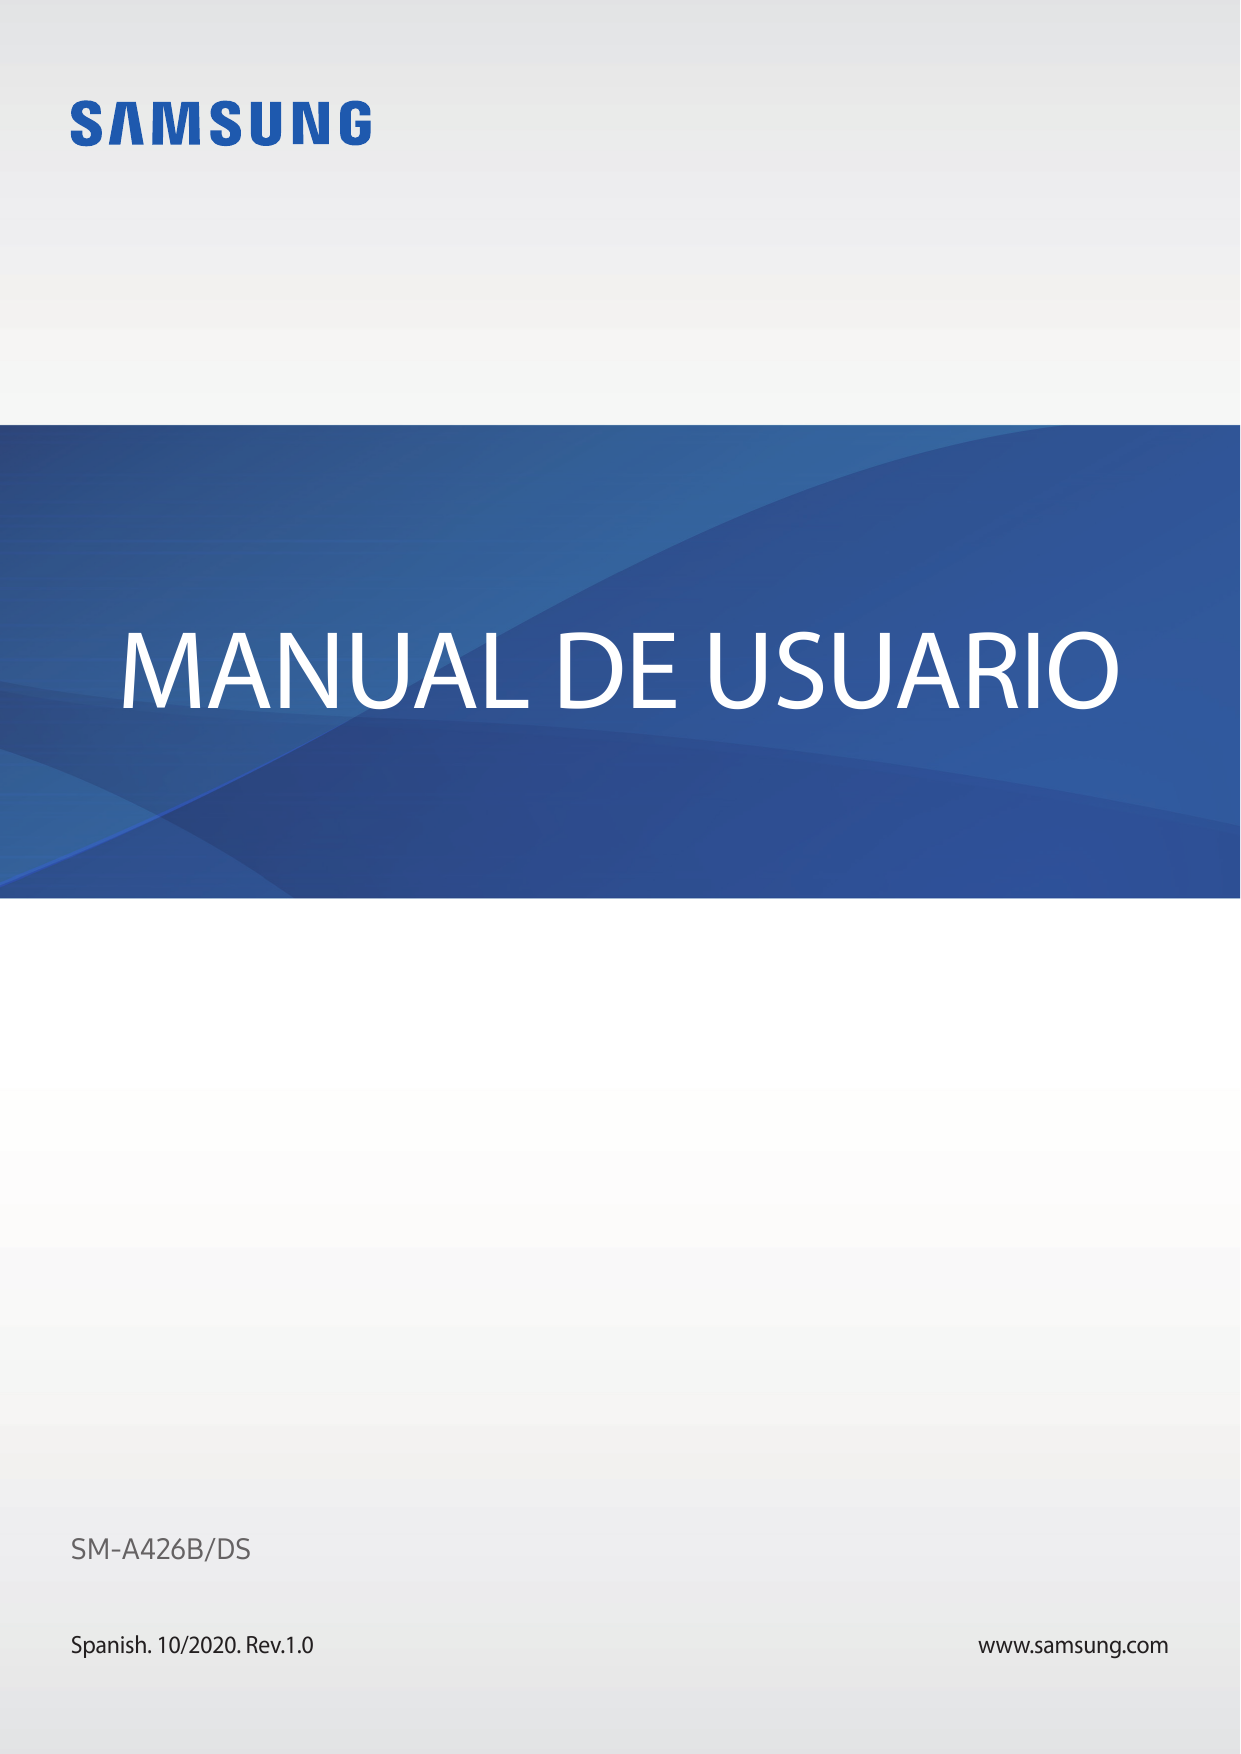 MANUAL DE USUARIOSM-A426B/DSSpanish. 10/2020. Rev.1.0www.samsung.com